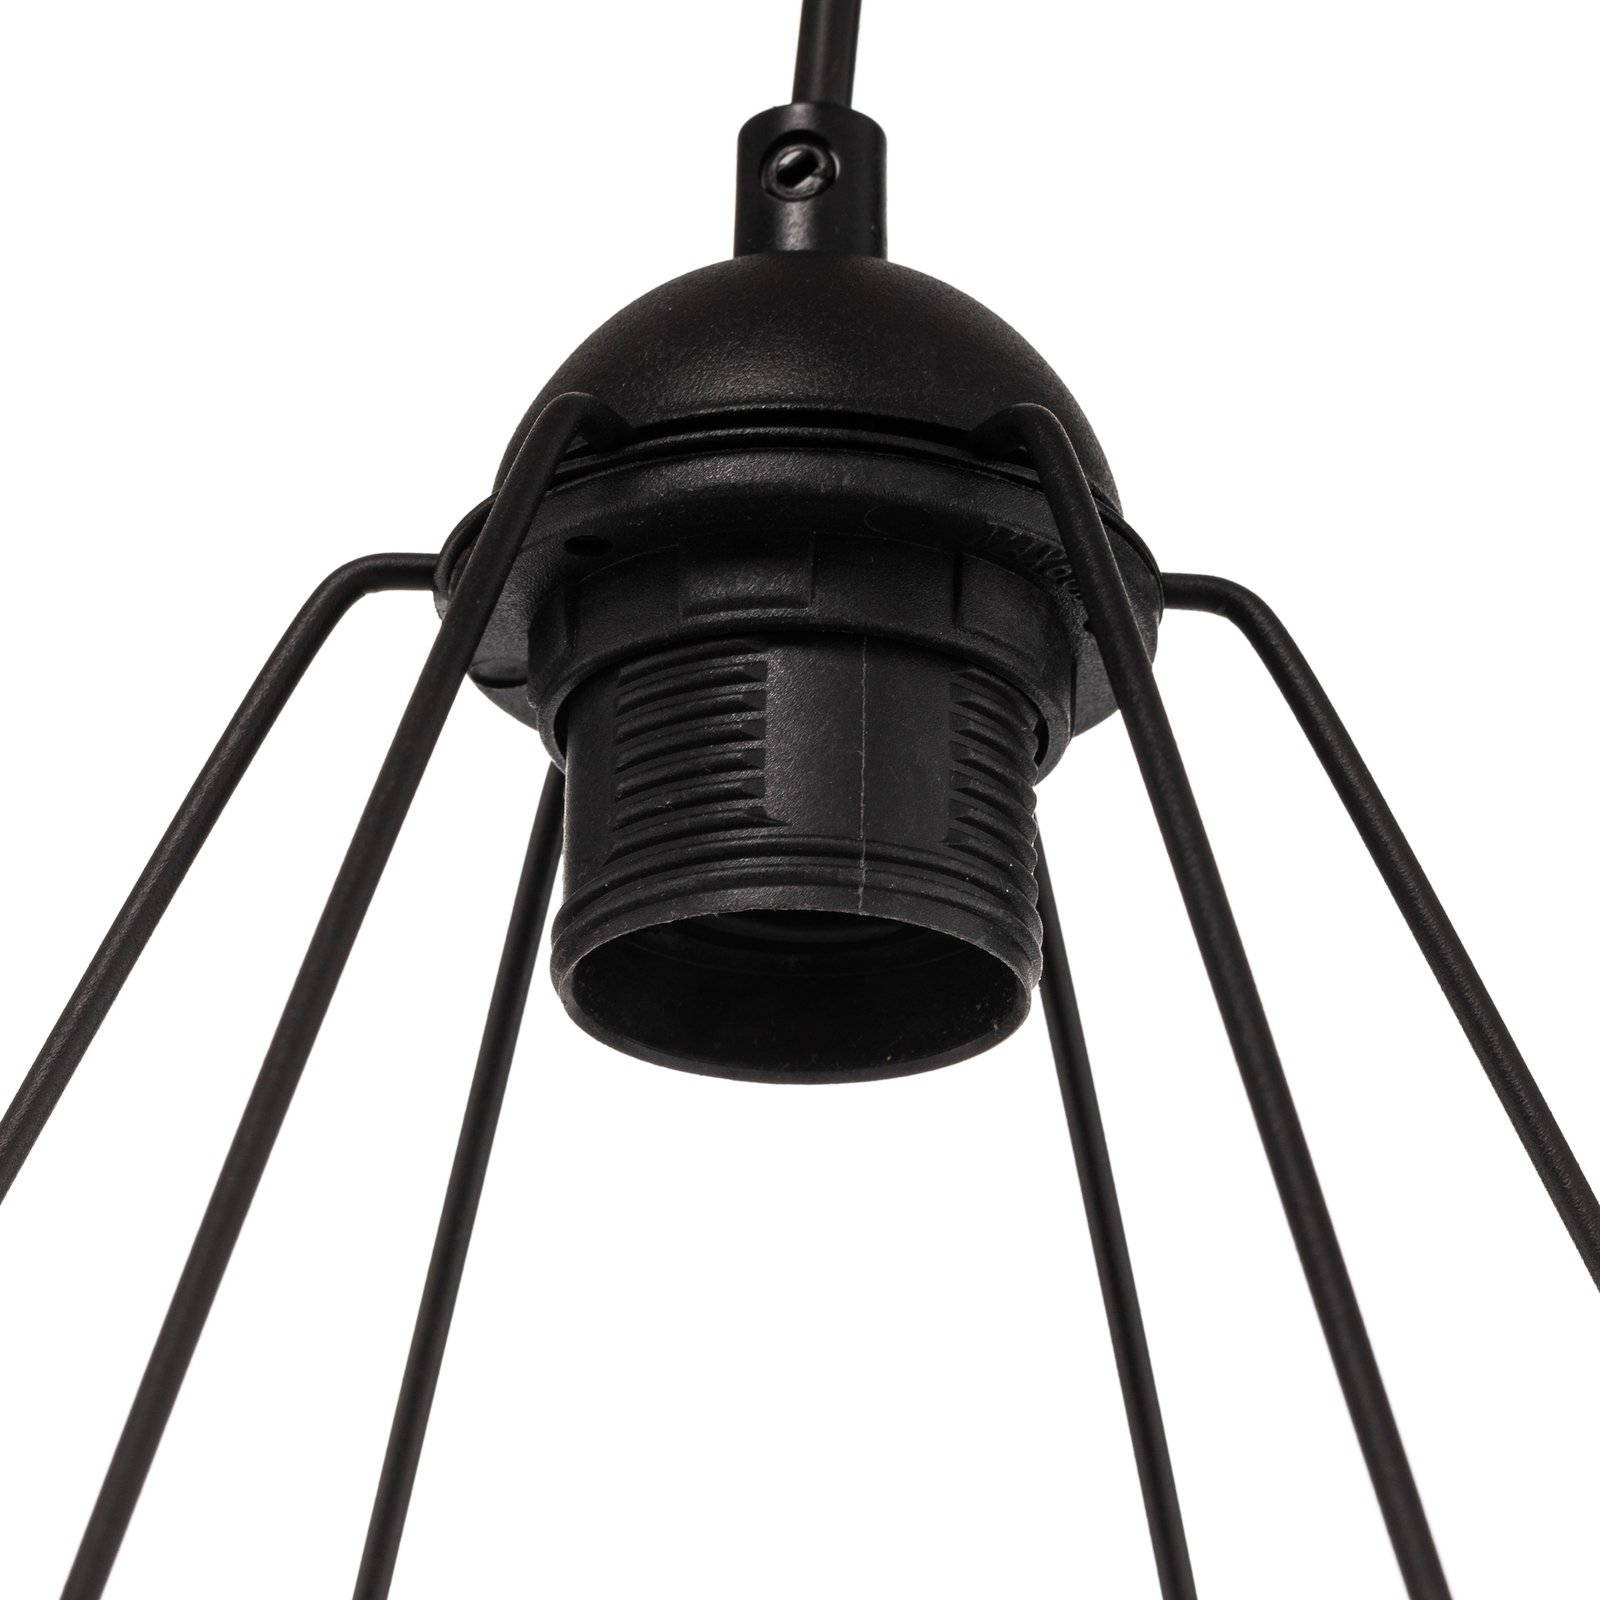 Hanglamp Acero met kooikappen, 3-lamps